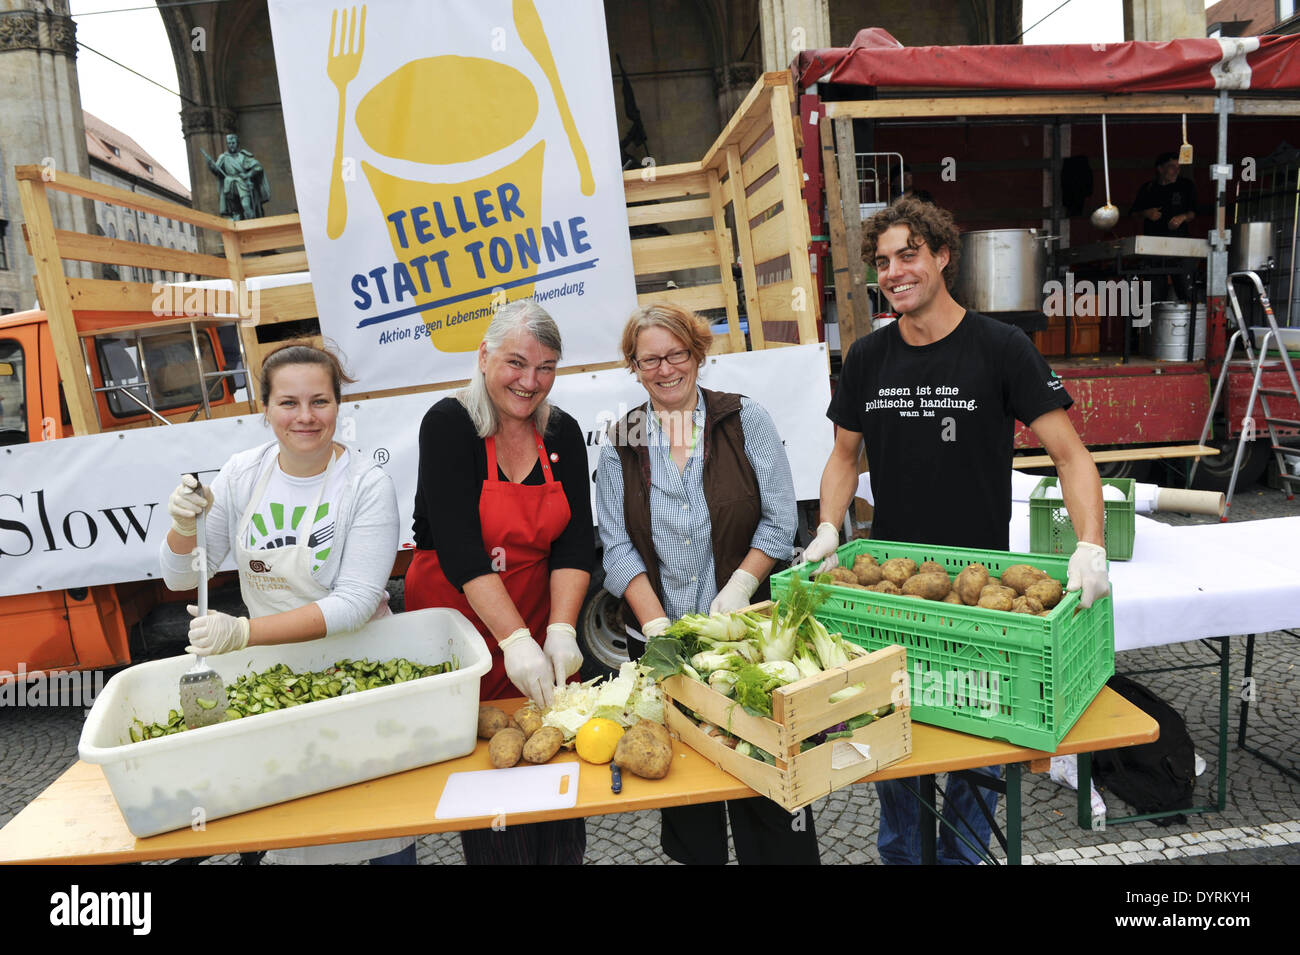 Verschwenden Sie der Aktionstag "Teller Statt Tonne" (Platte nicht verschwenden) gegen Lebensmittel in München 2012 Stockfoto